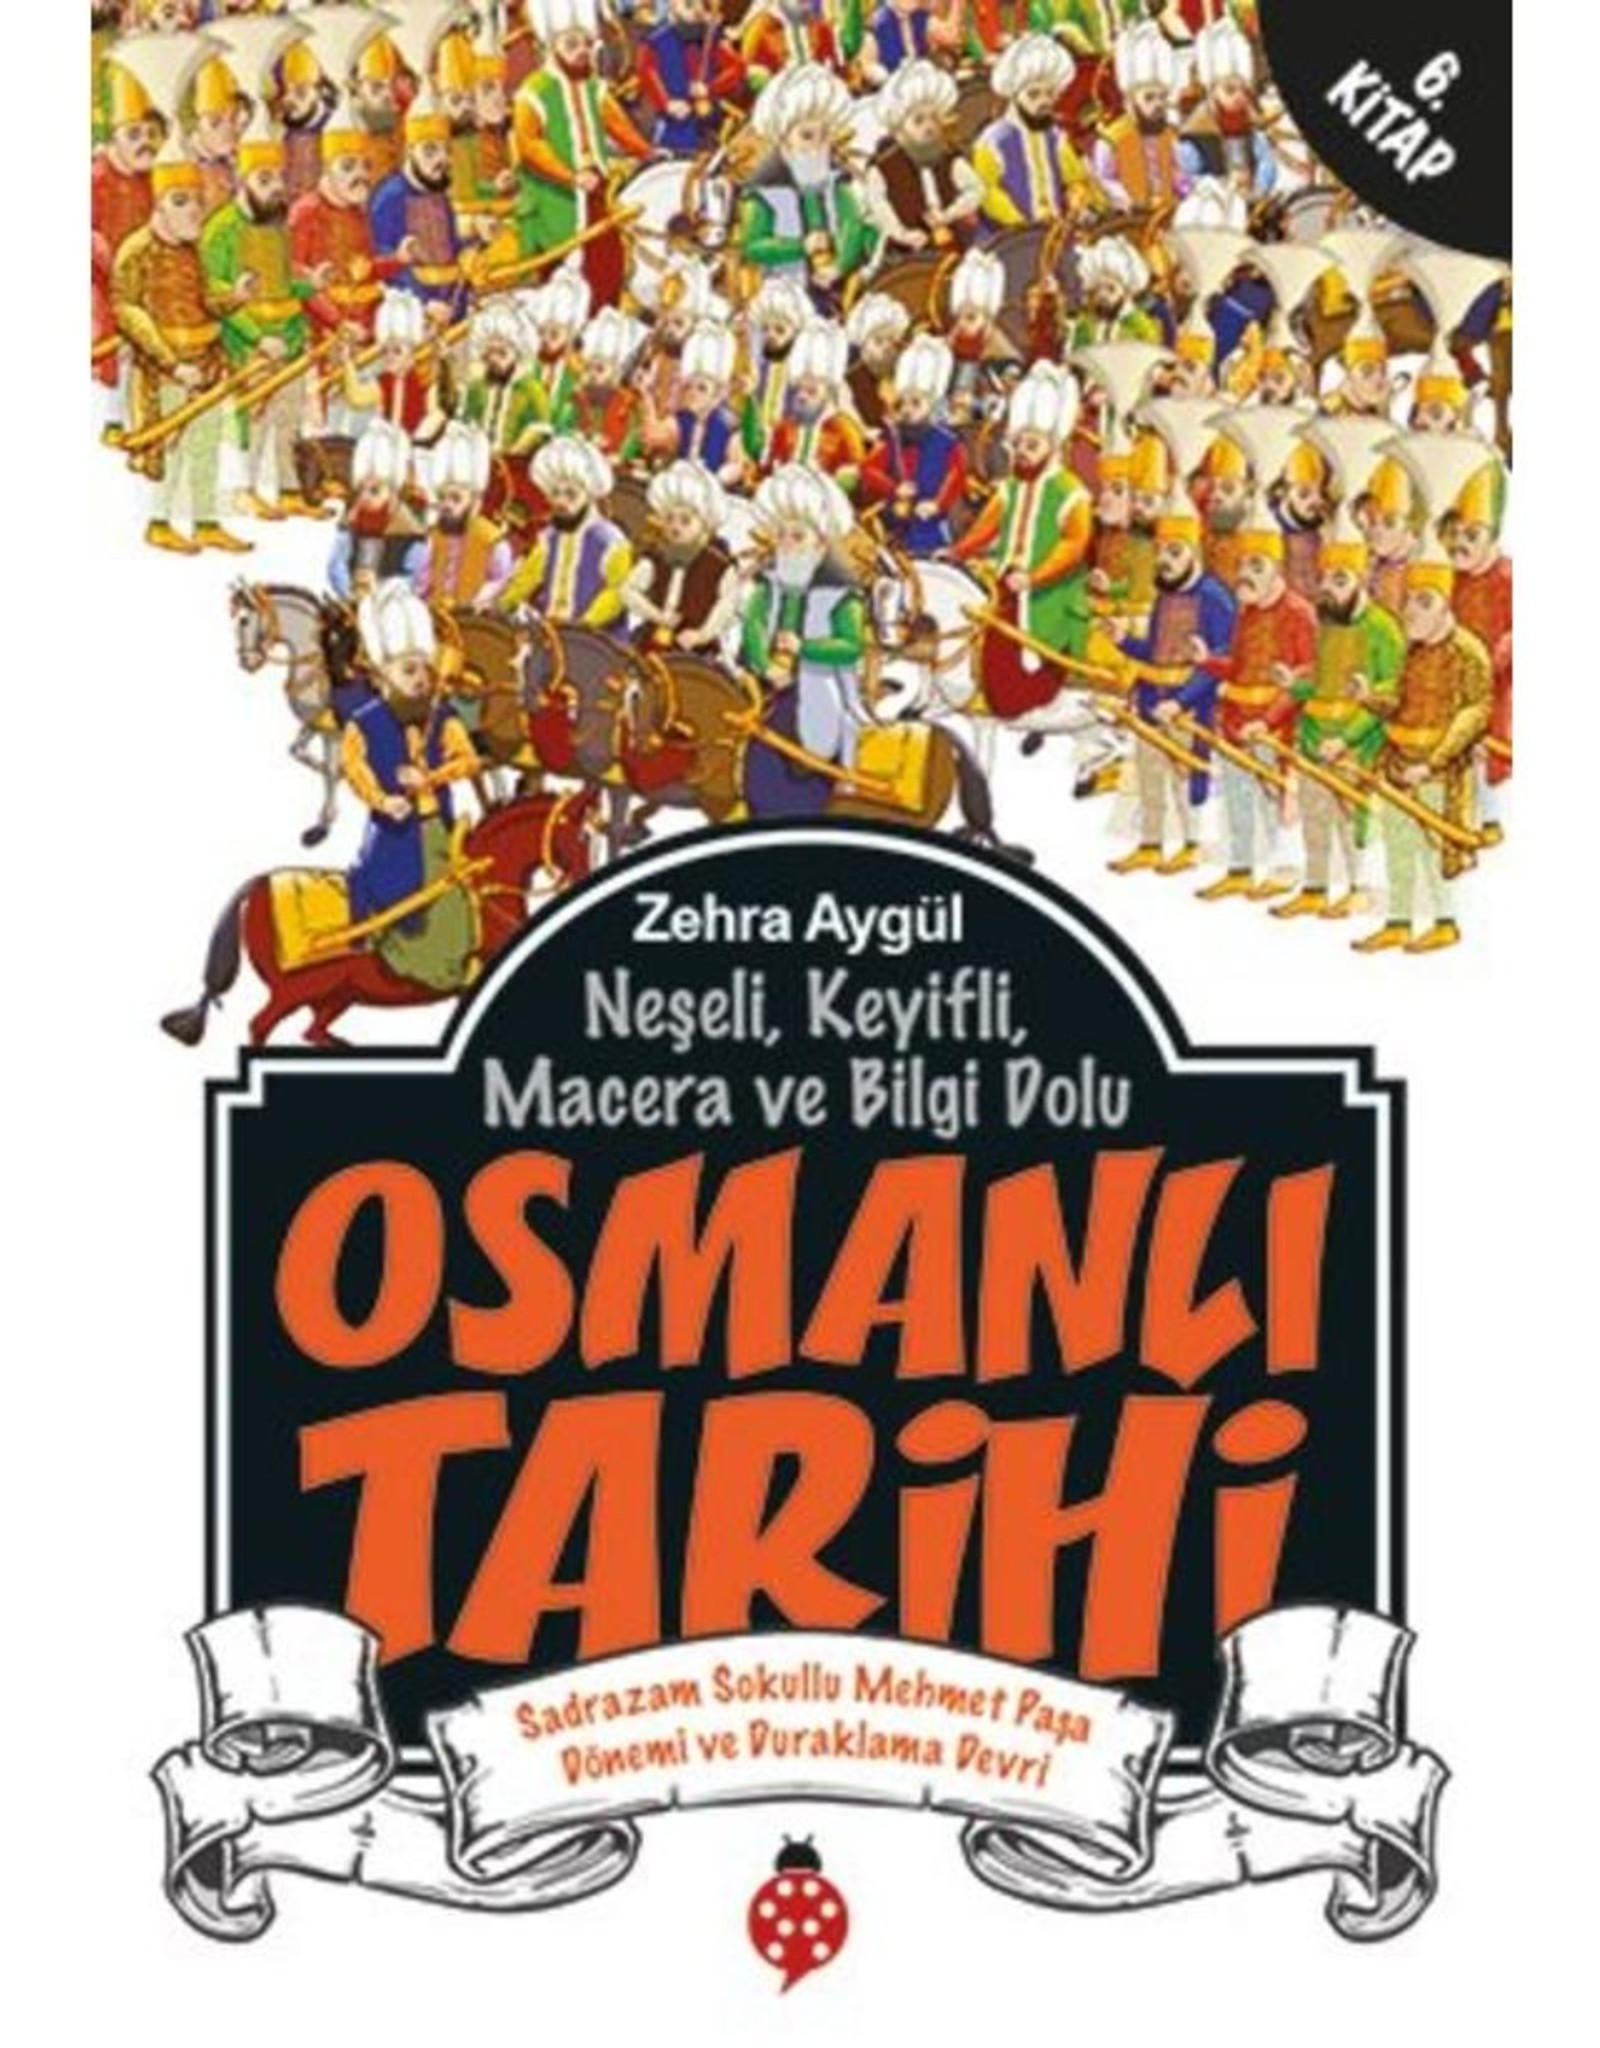 Osmanlı Tarihi Sadrazam Sokullu Mehmet Paşa Dönemi ve Duraklama Devri